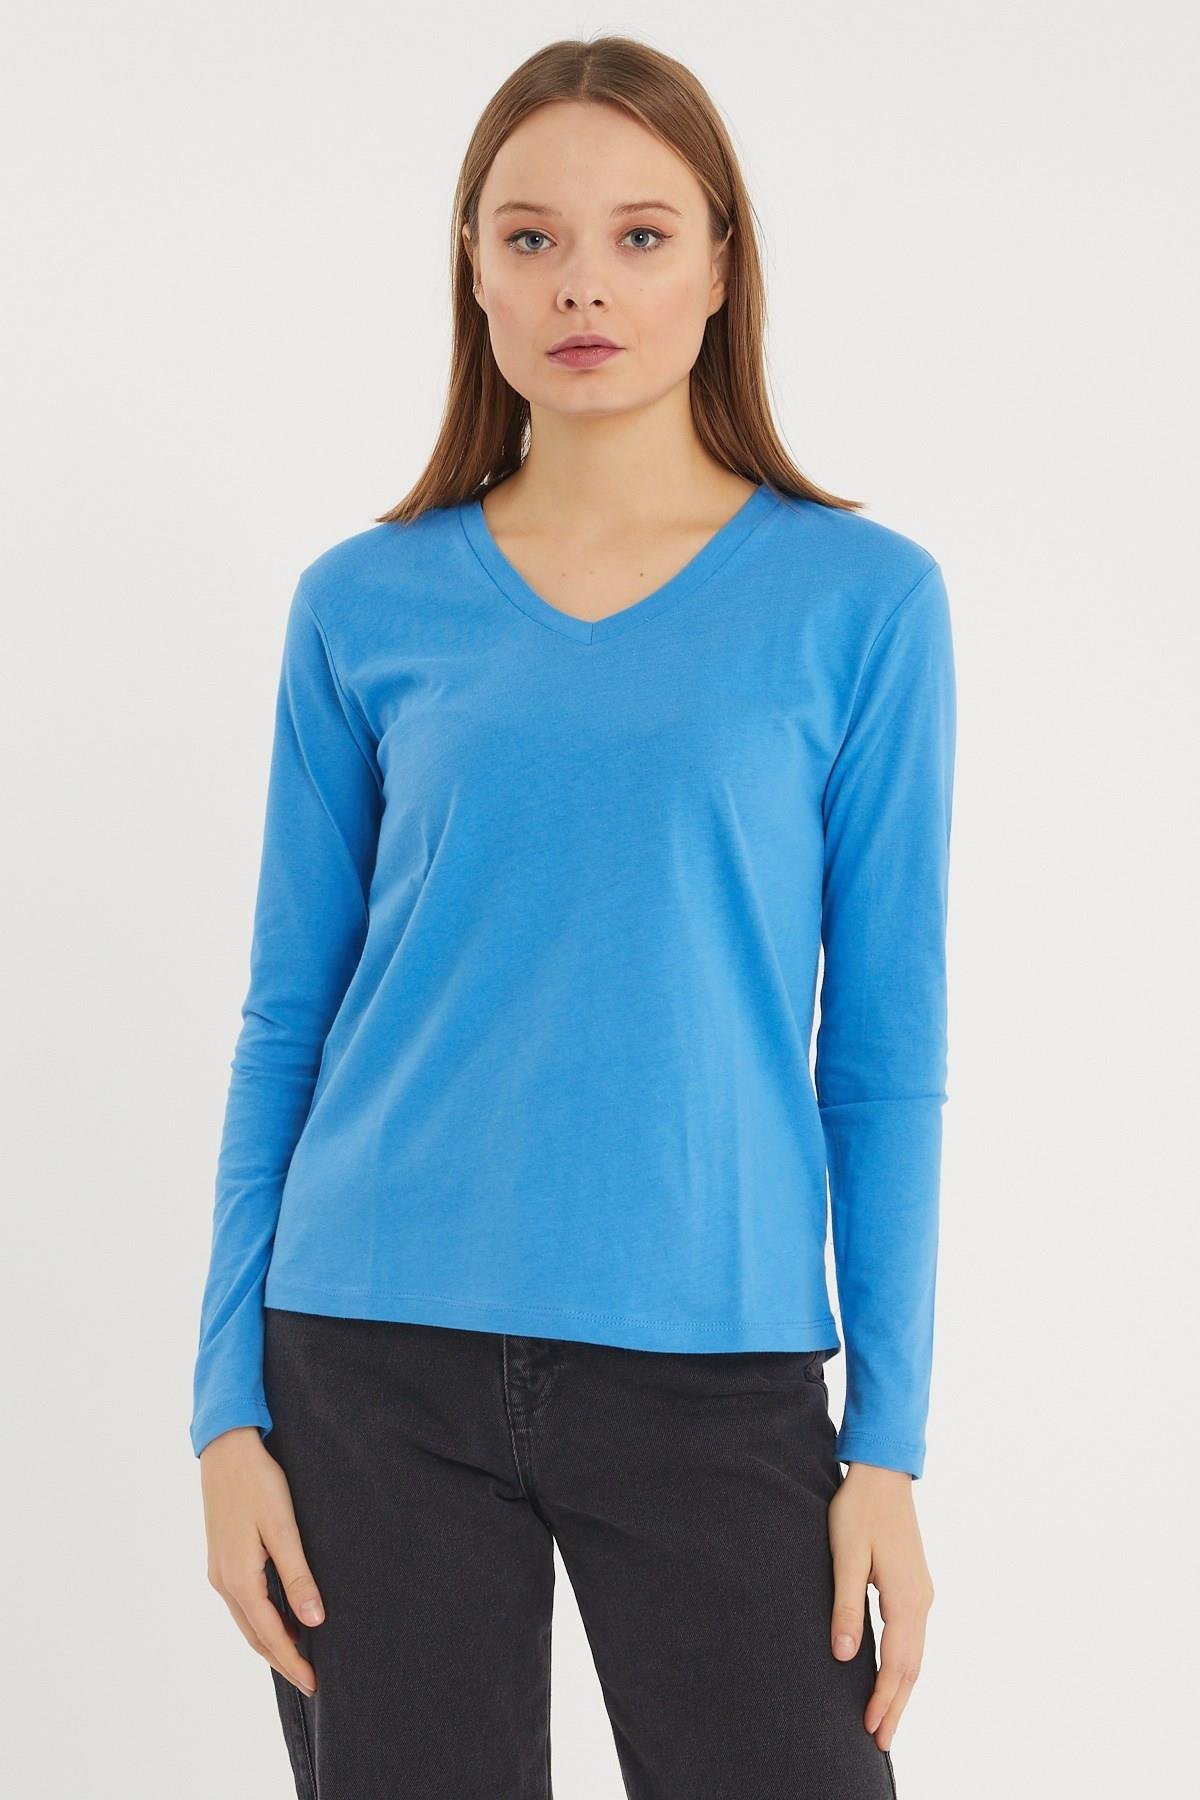 Kadın Uzun Kollu V Yaka Basic Pamuklu Örme Bluz - Mavi